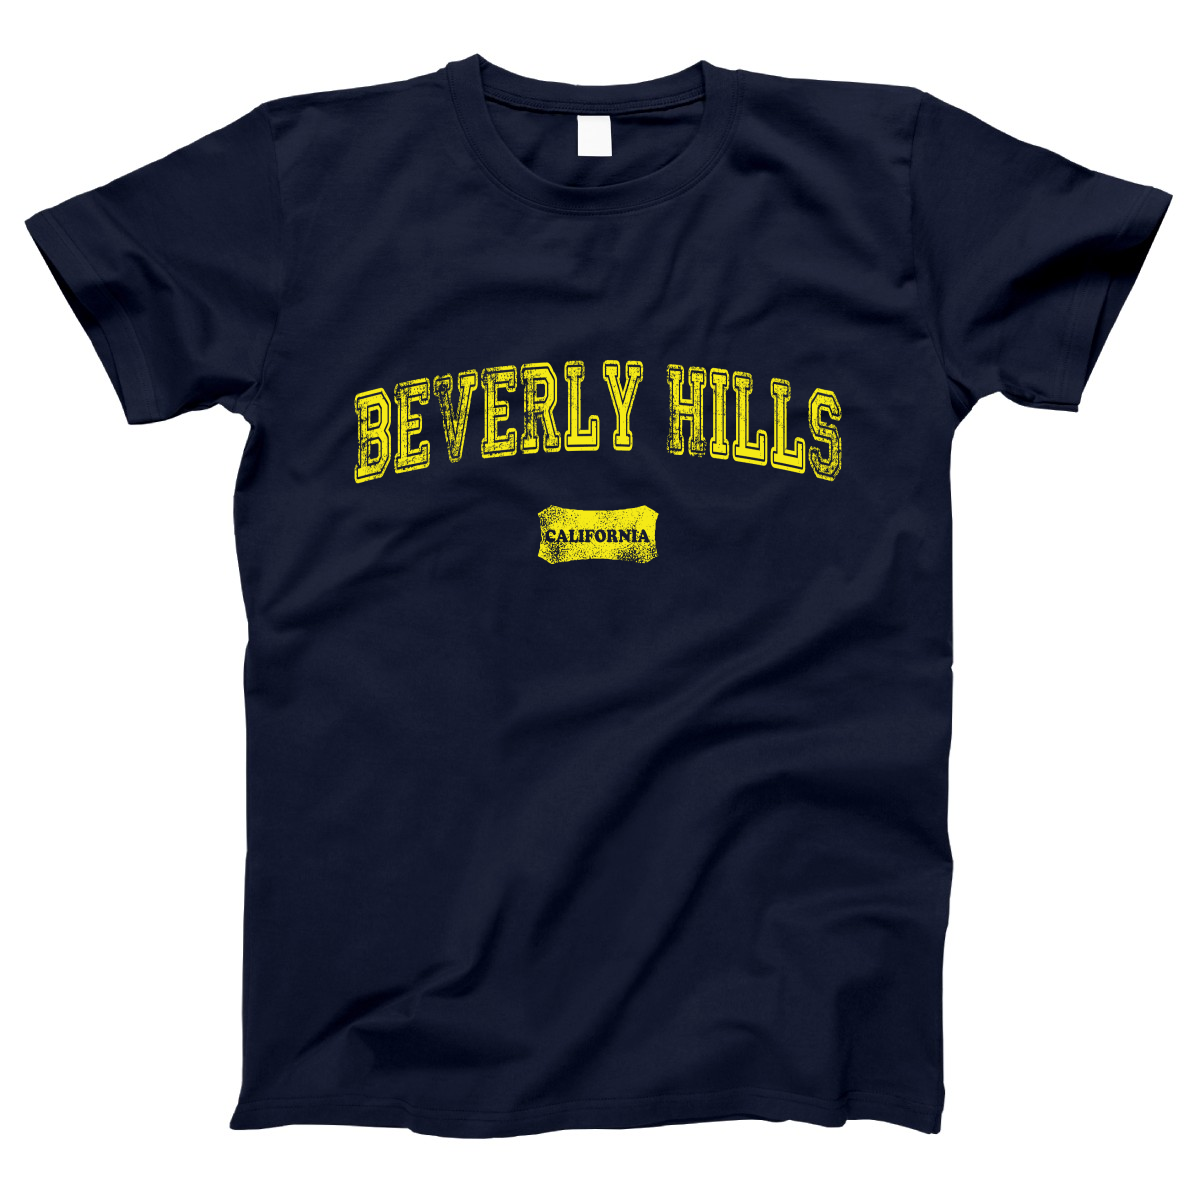 Beverly Hills Represent Women's T-shirt | Navy